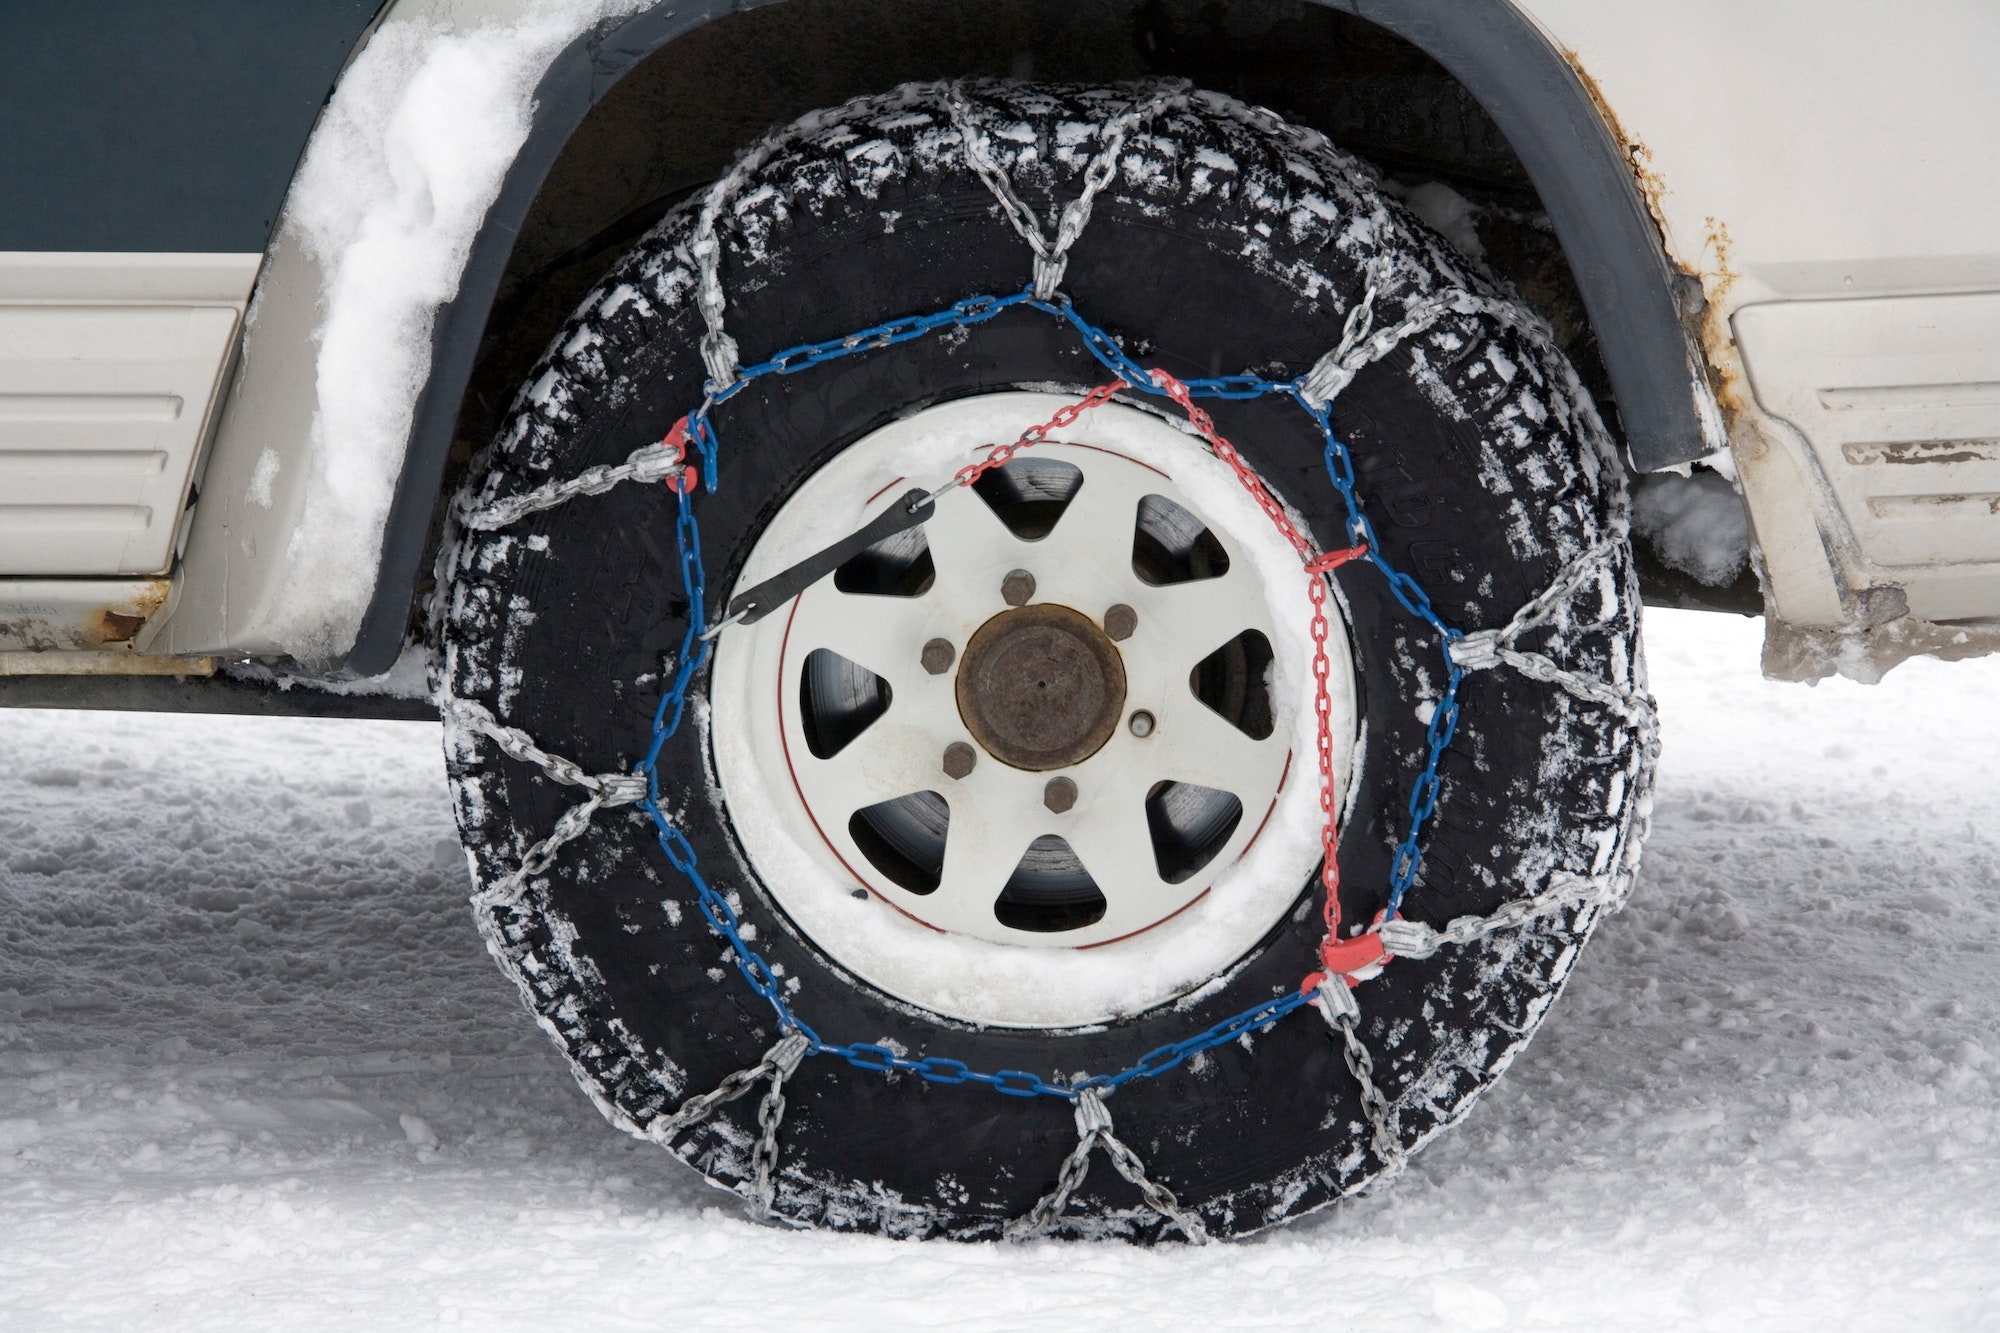 Choisissez un pneu hiver en fonction de la température